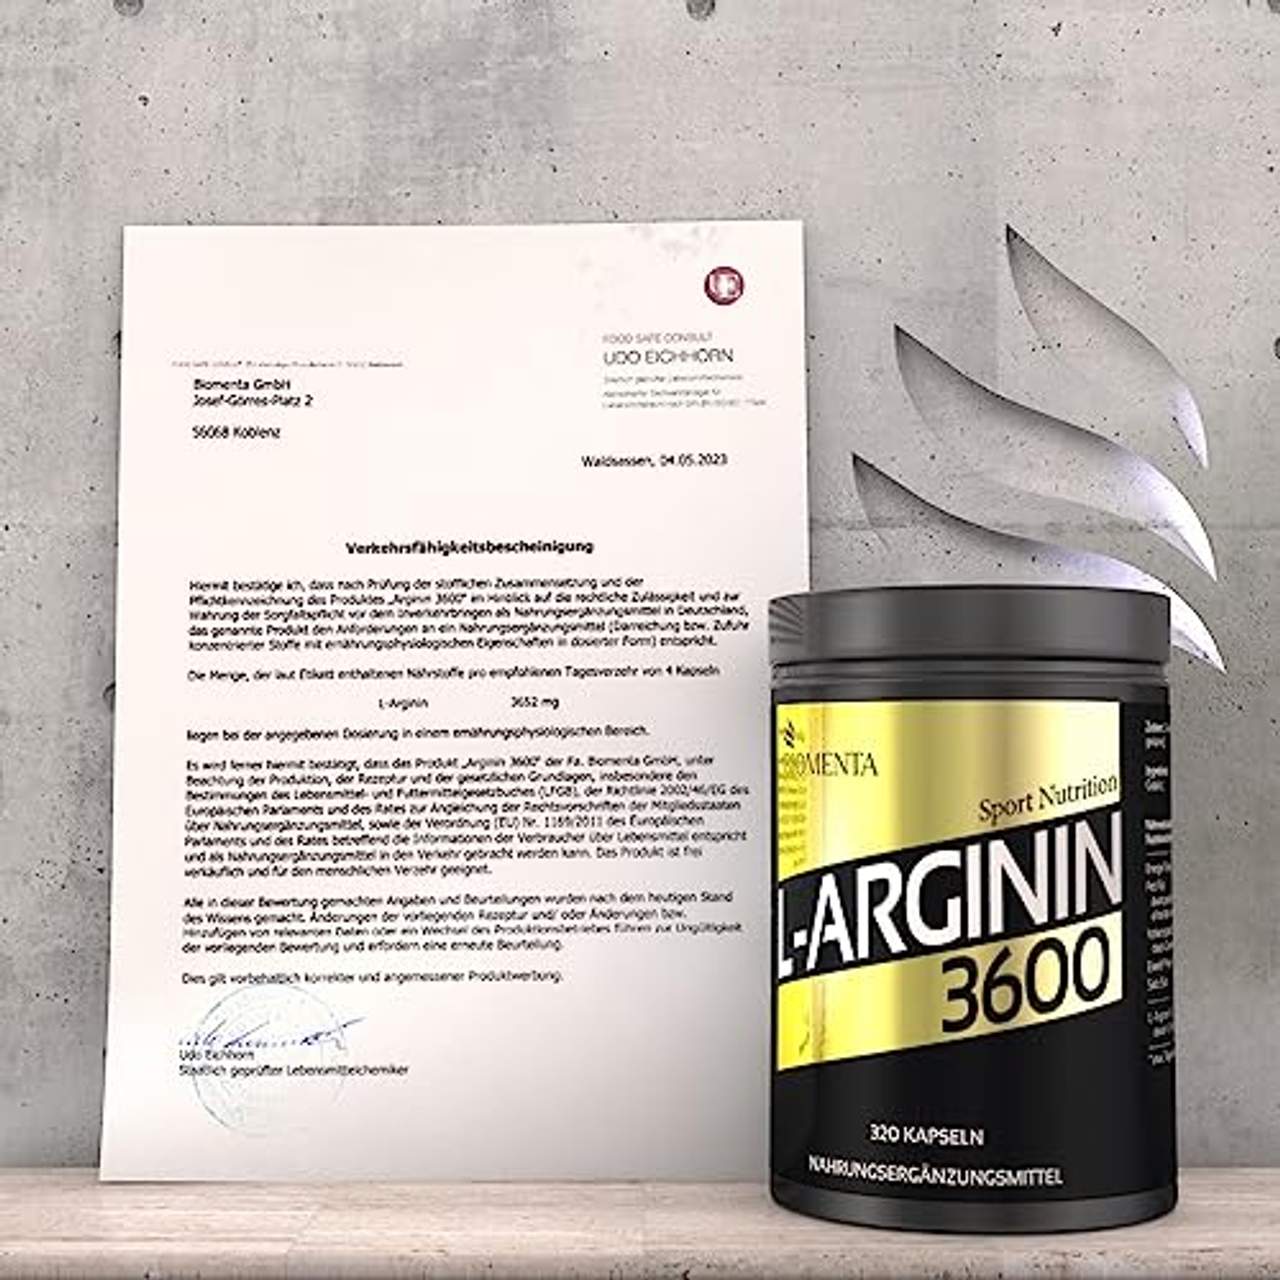 BIOMENTA L-Arginin 3600 Aktionspreis